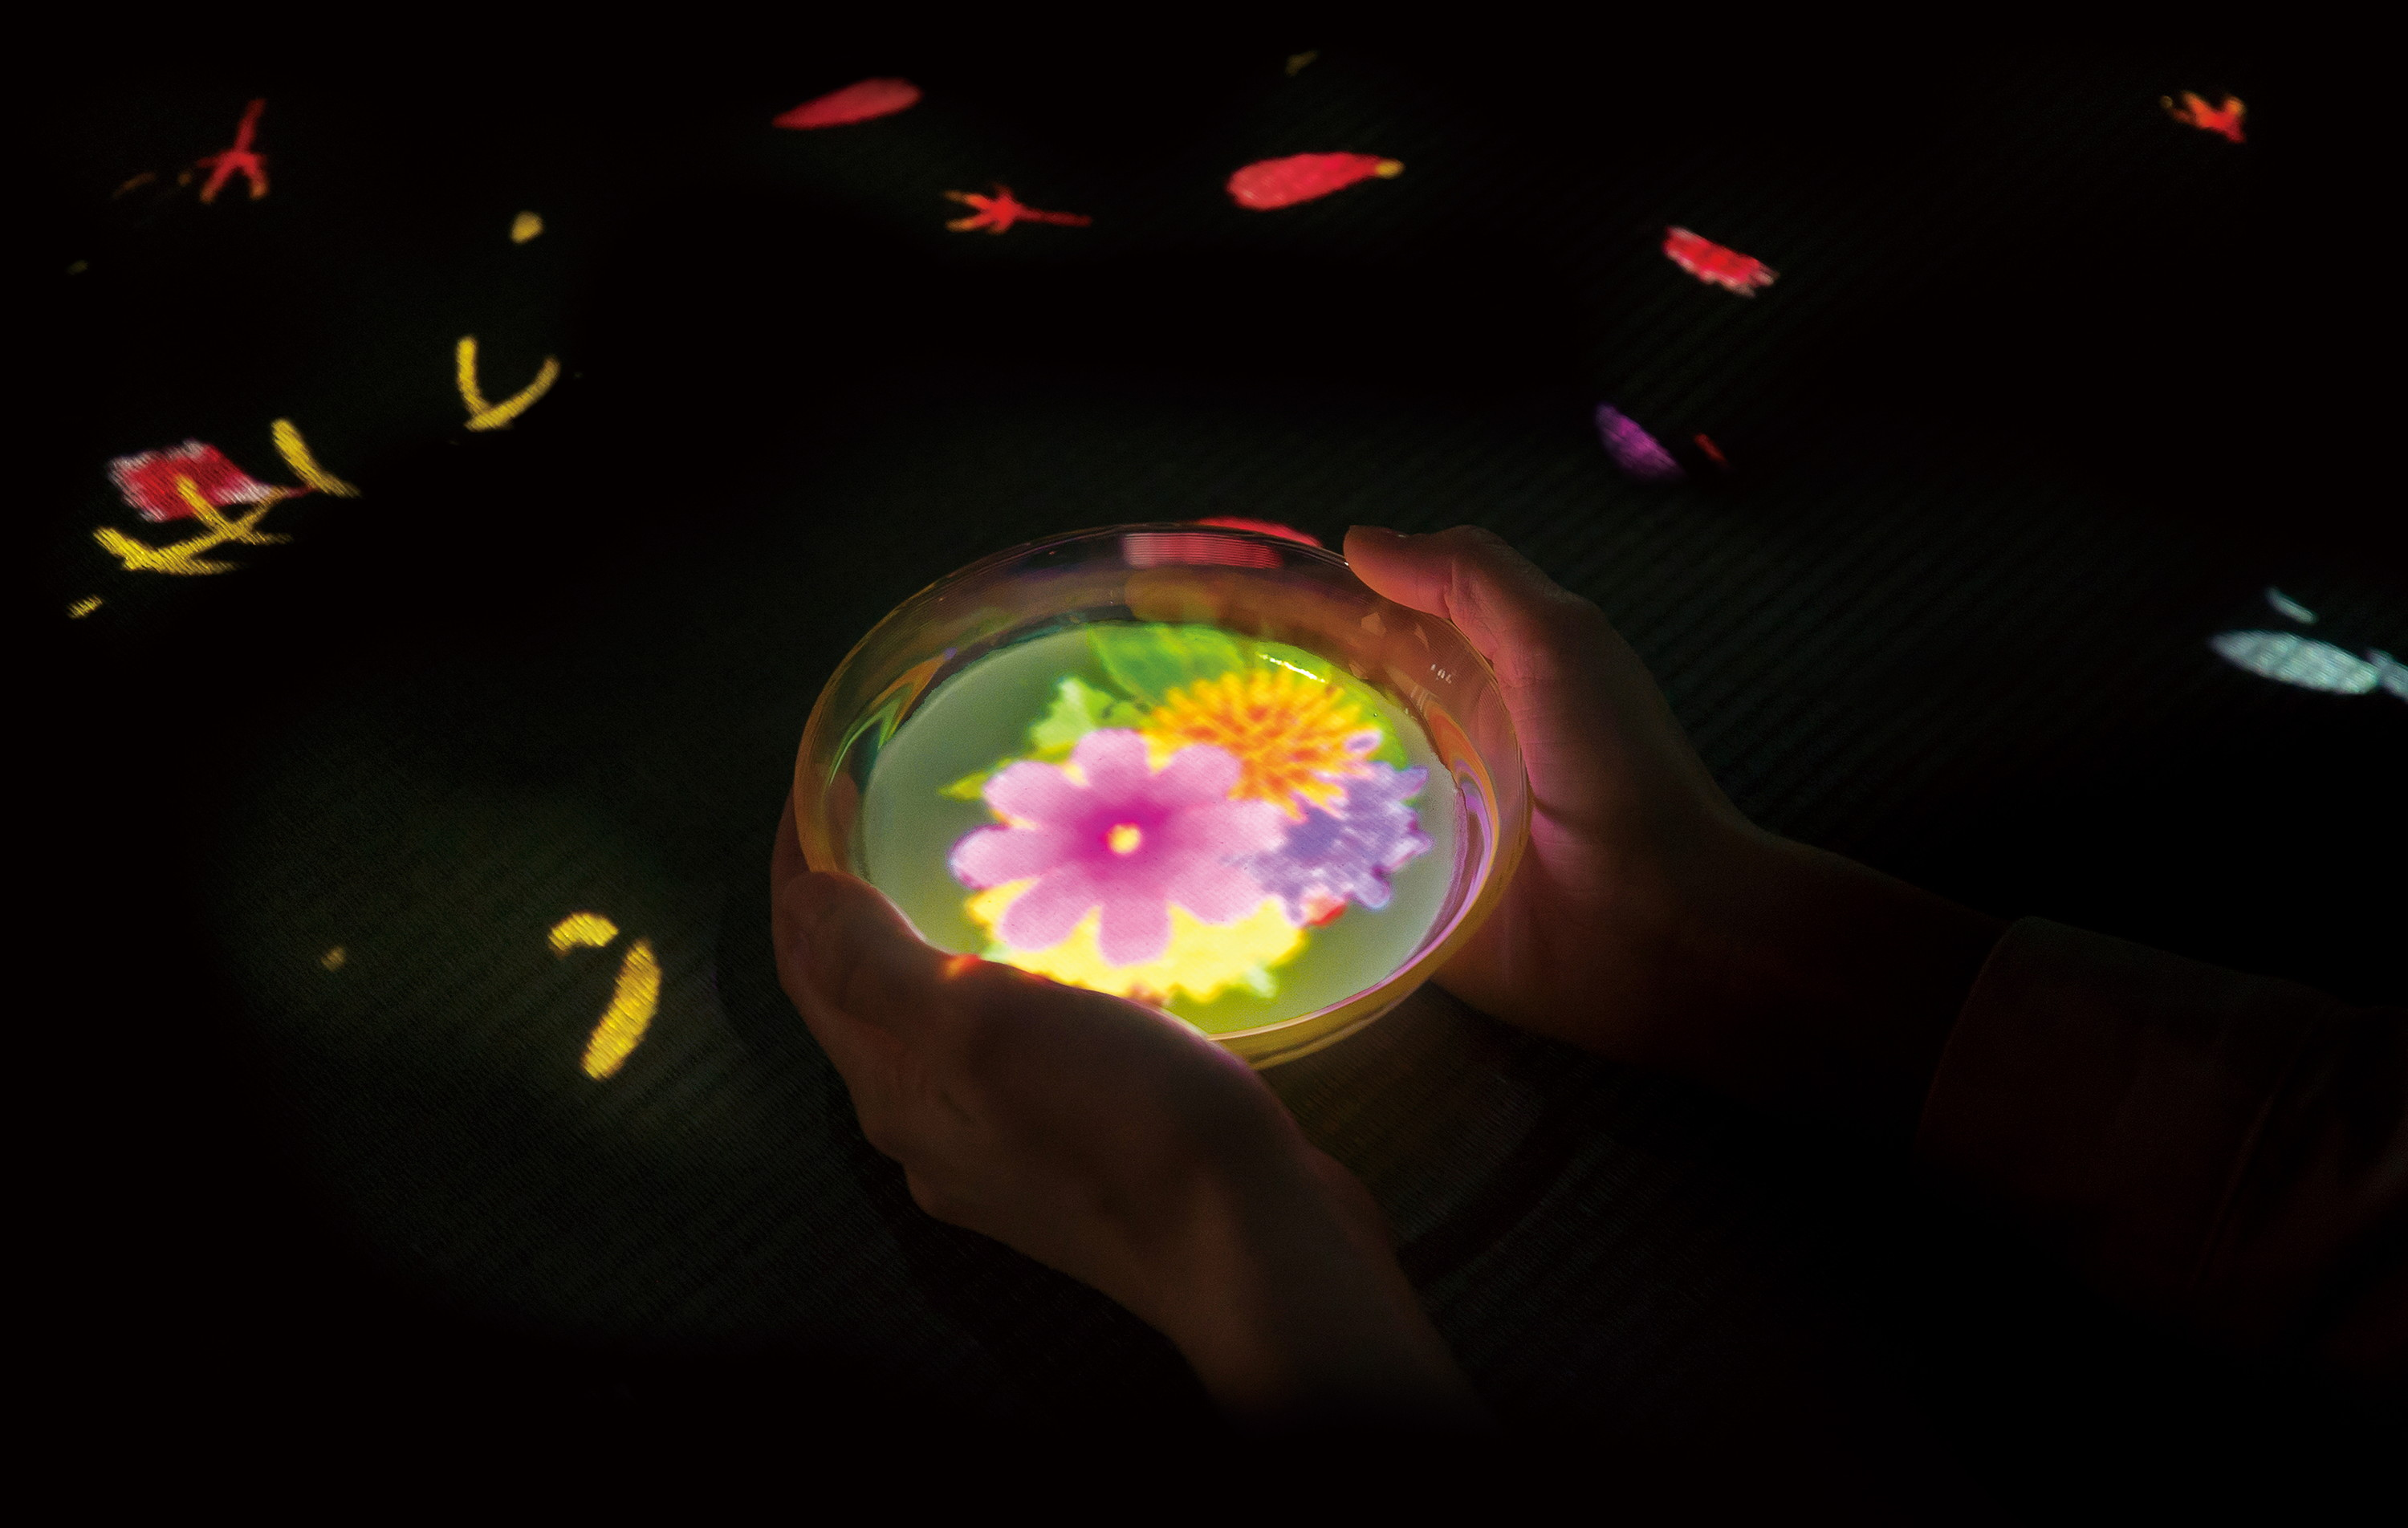 Flowers Bloom in an Infinite Universe inside a Teacup | teamLab